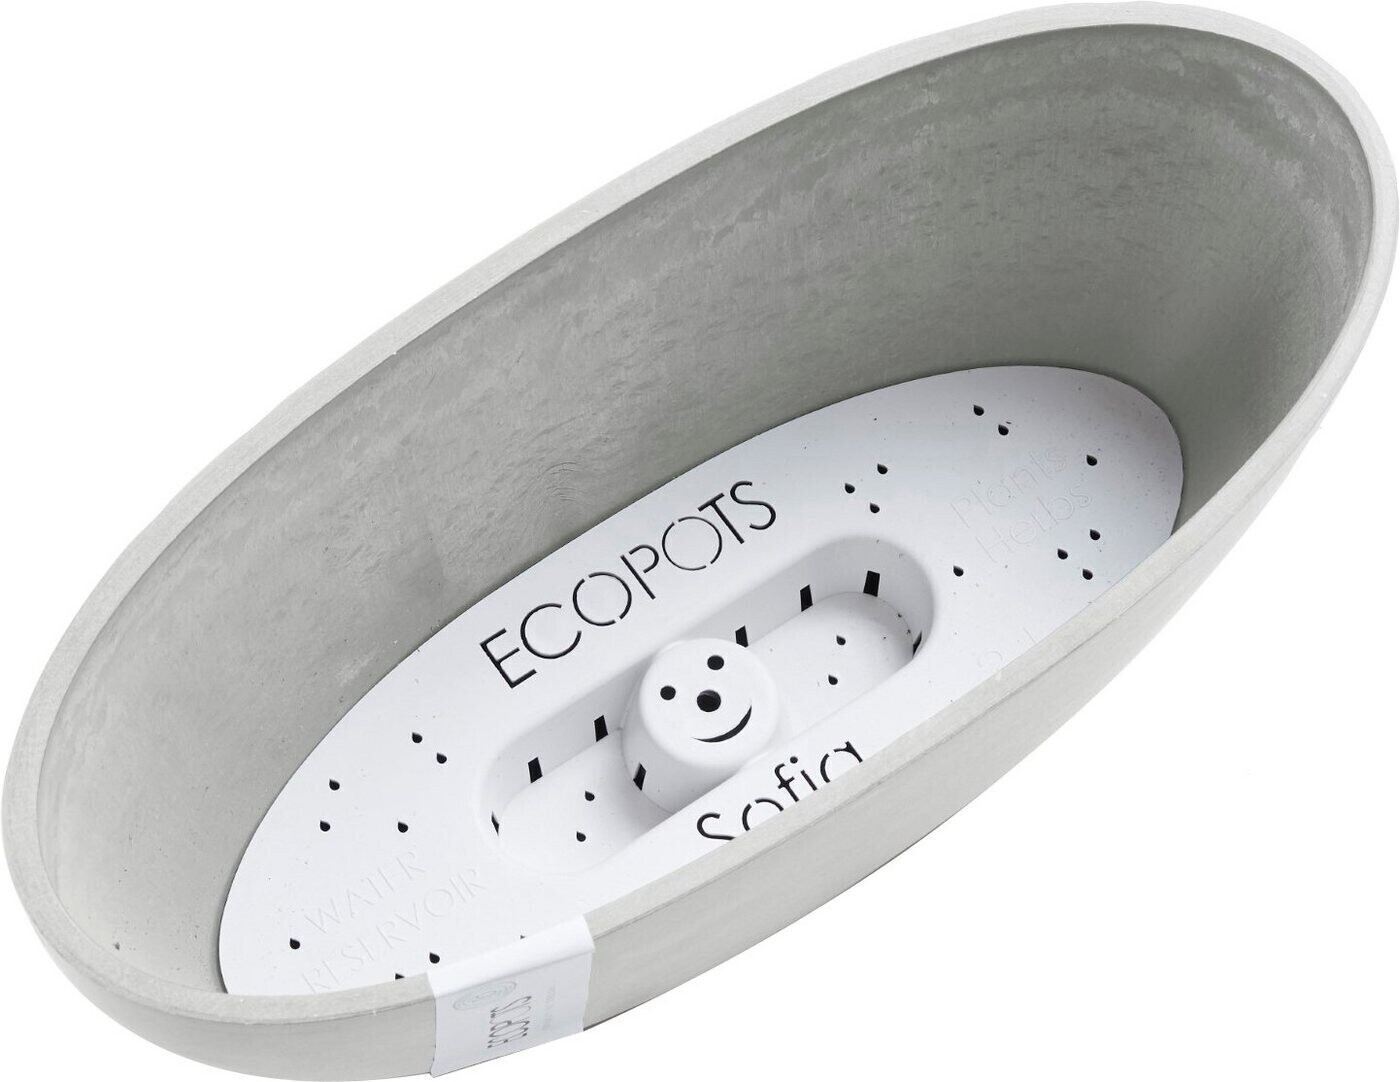 17,99 € | Ecopots Sofia 13x13x13,5 cm Preisvergleich bei ab weiß/grau BxTxH: